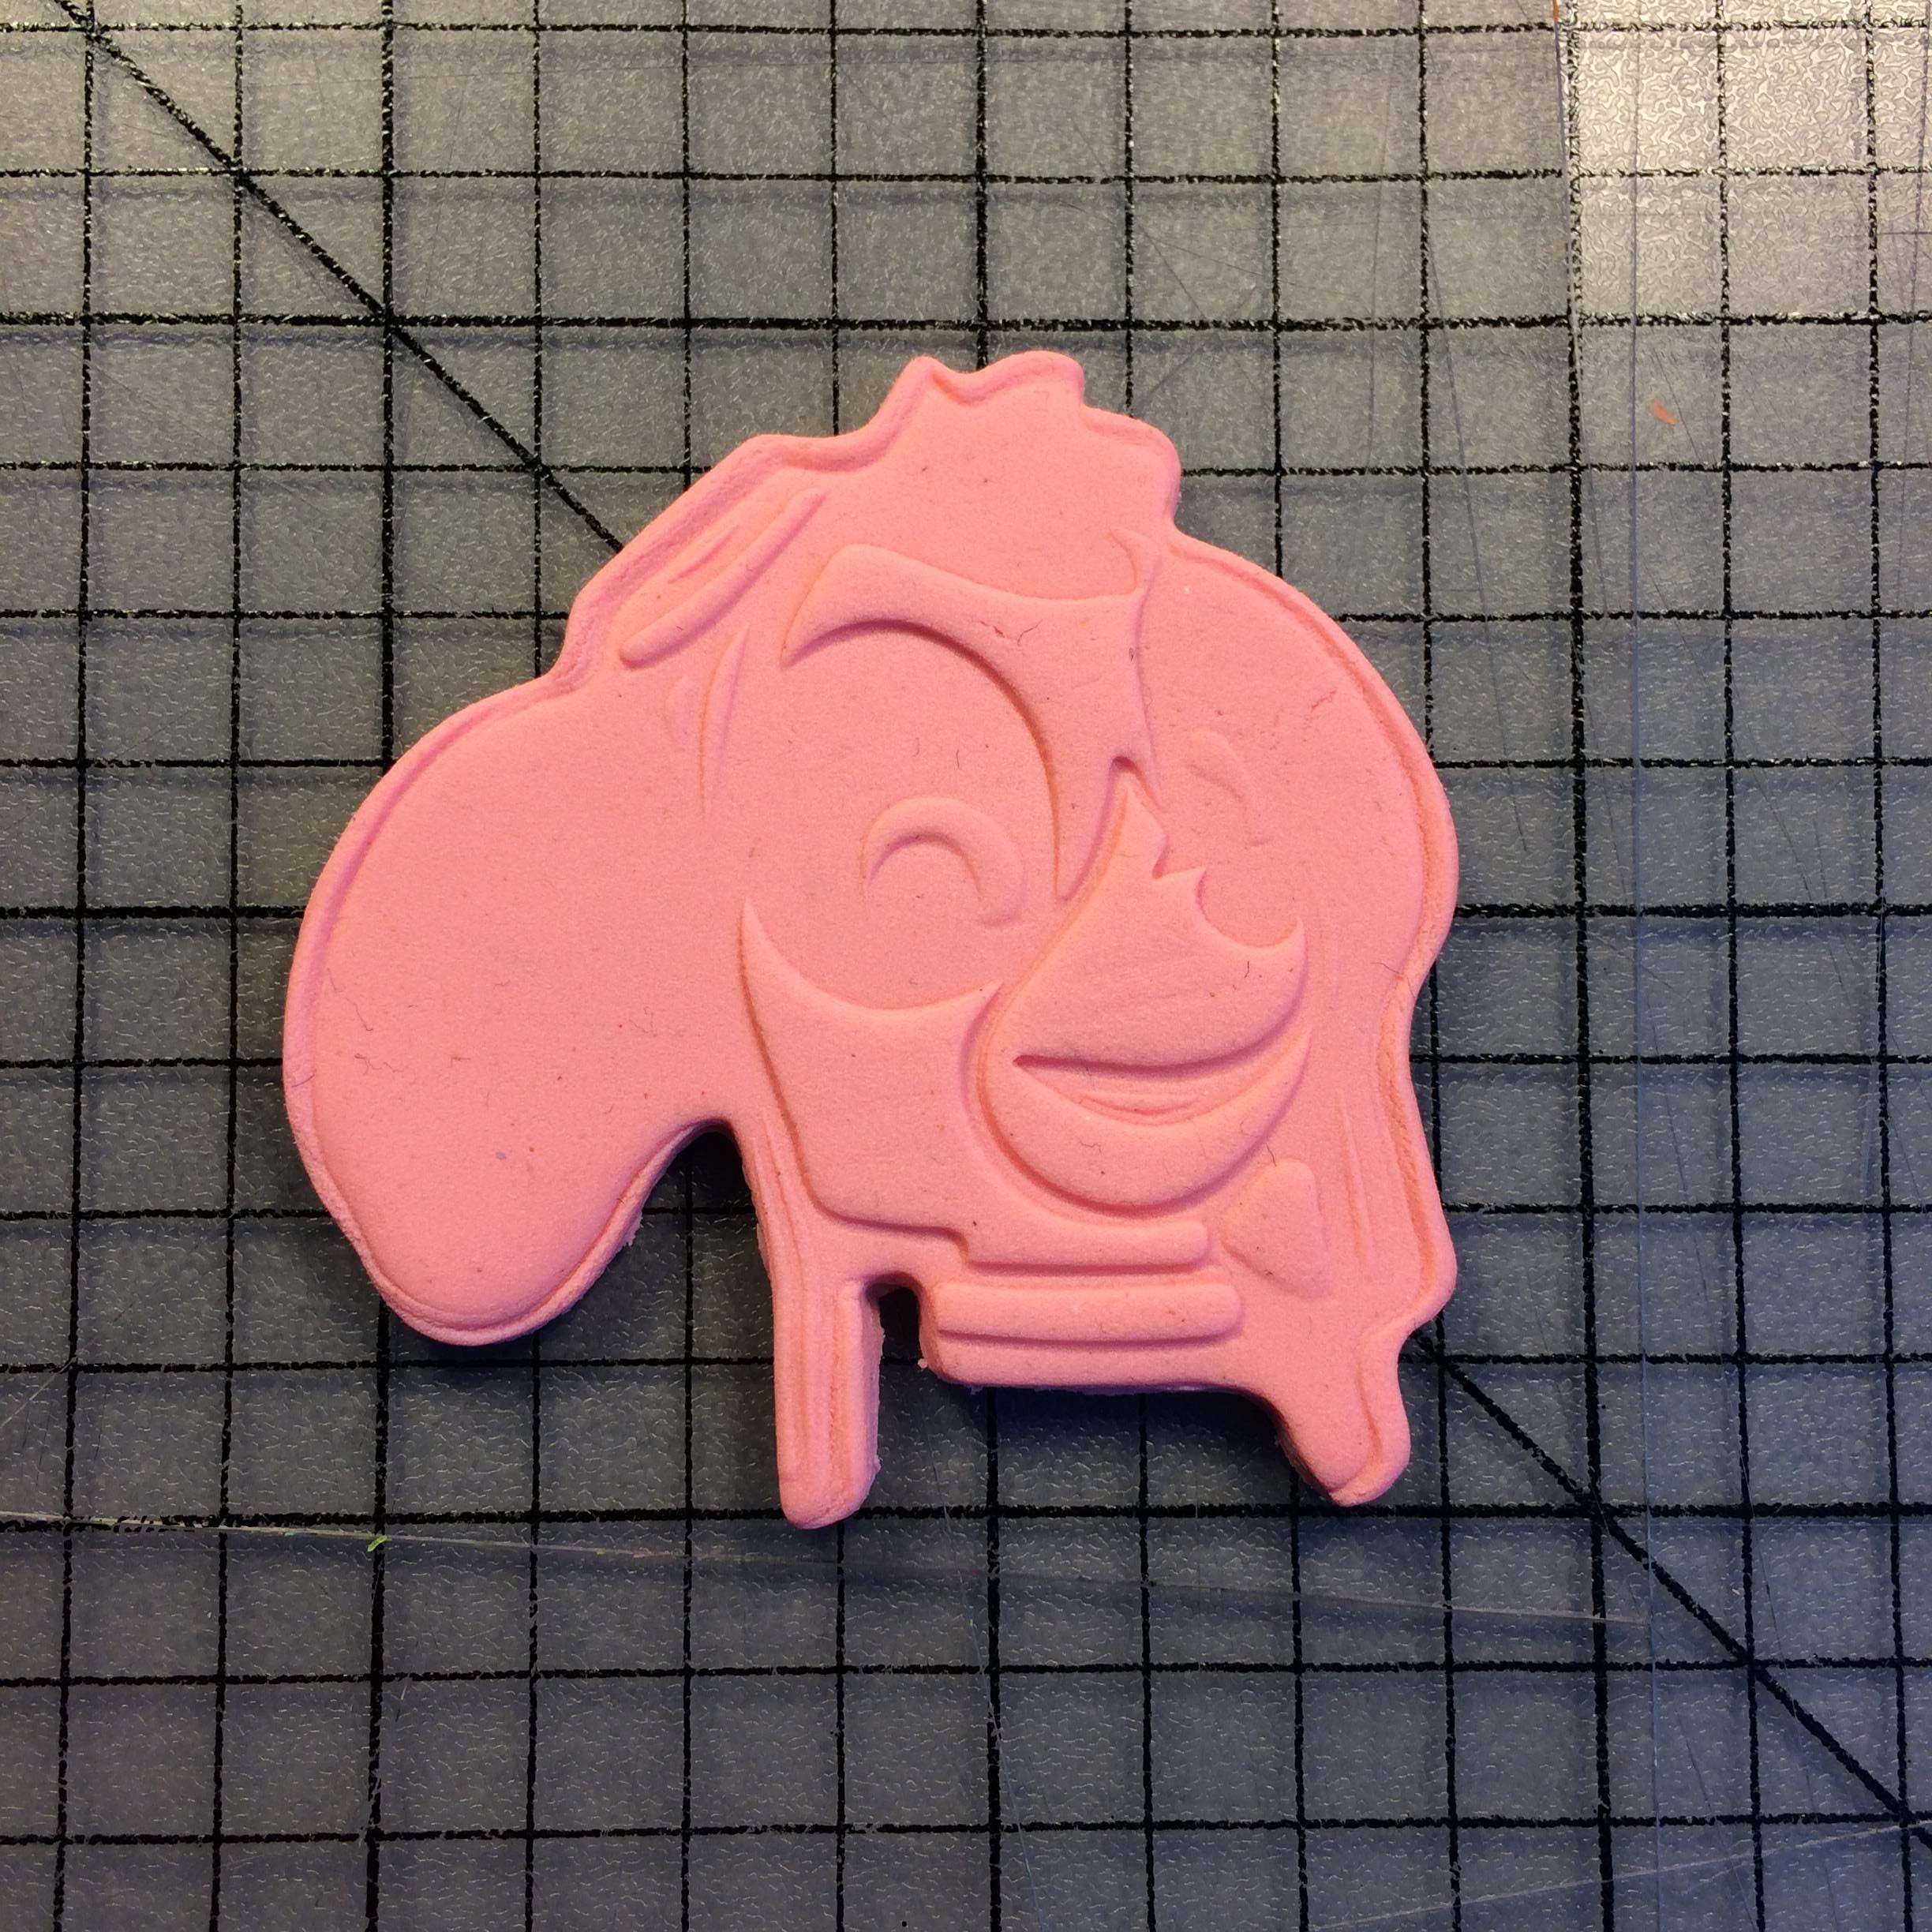 Skye Paw Patrol Cookie Cutter Set 3D model 3D printable